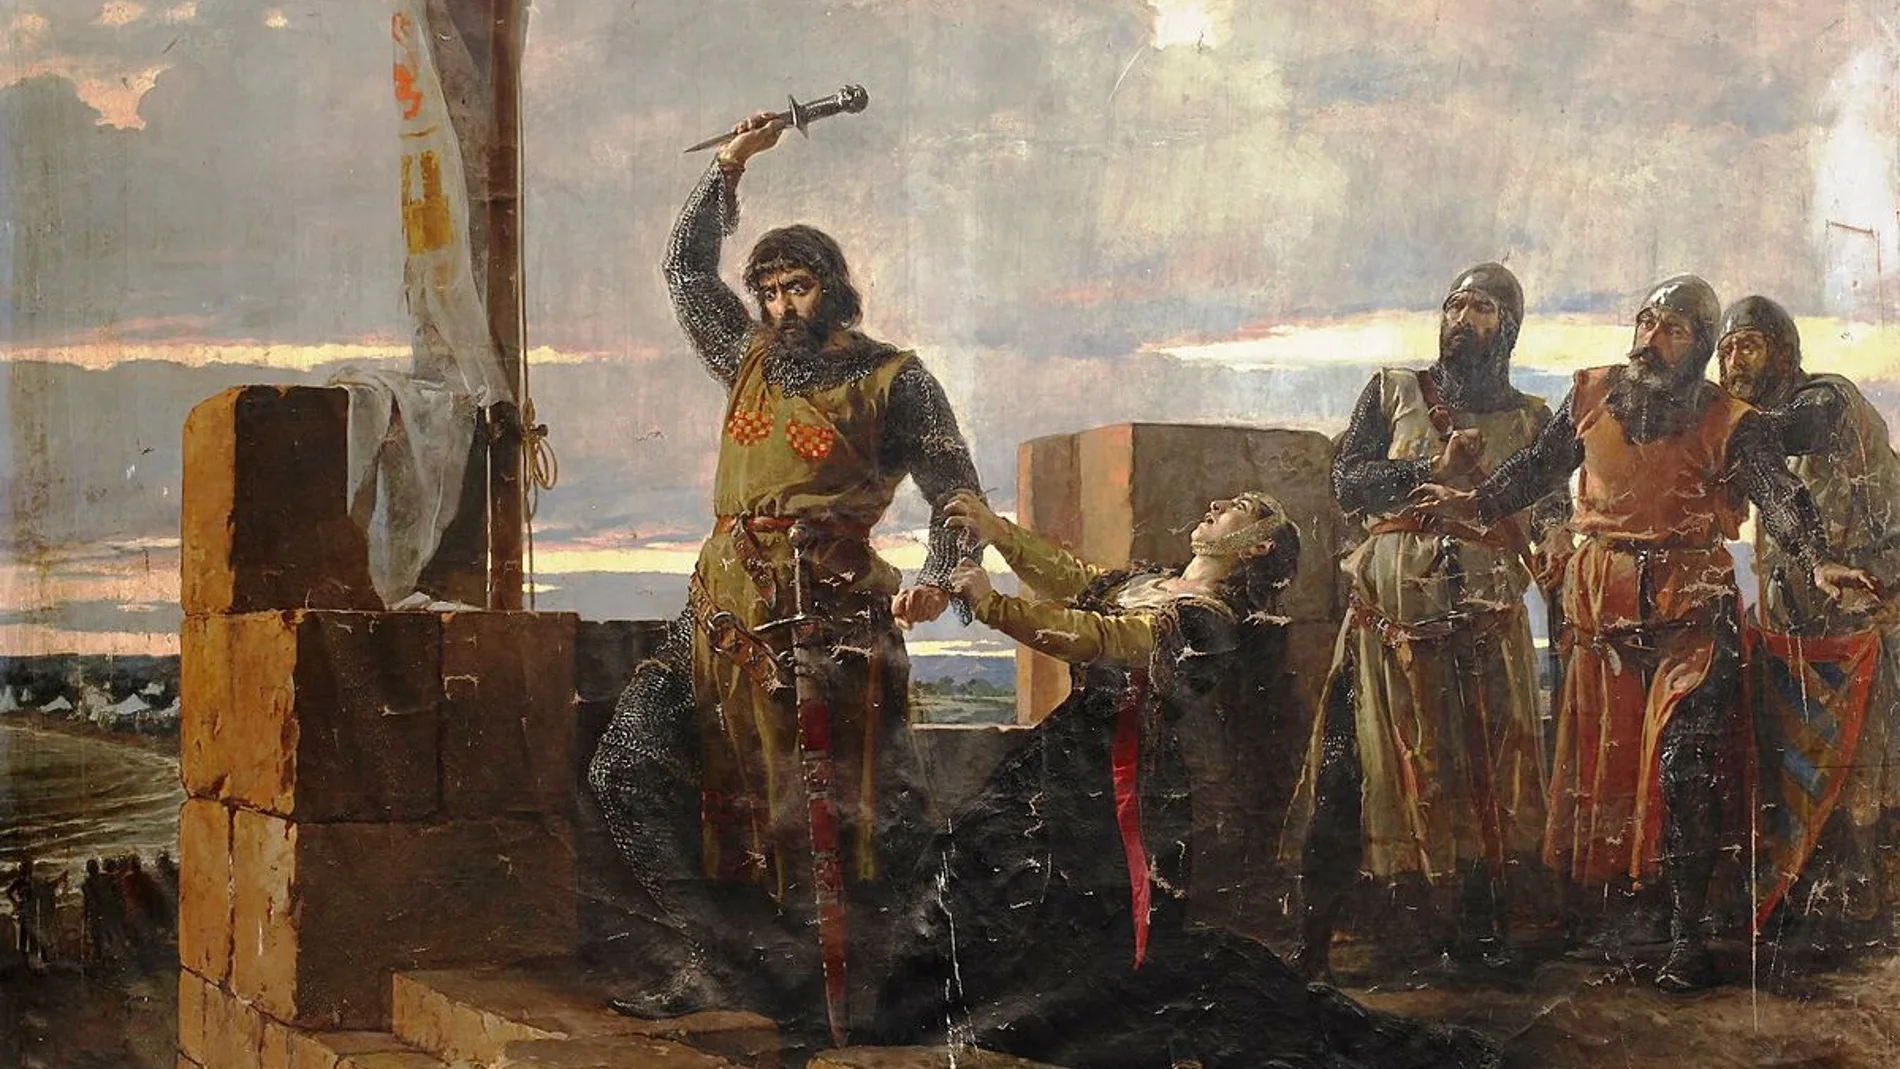 Guzmán el Bueno arroja su puñal a los sitiadores durante el defensa de Tarifa (1294) frente al infante don Juan y sus aliados musulmanes. Cuadro de Salvador Martínez Cubells.